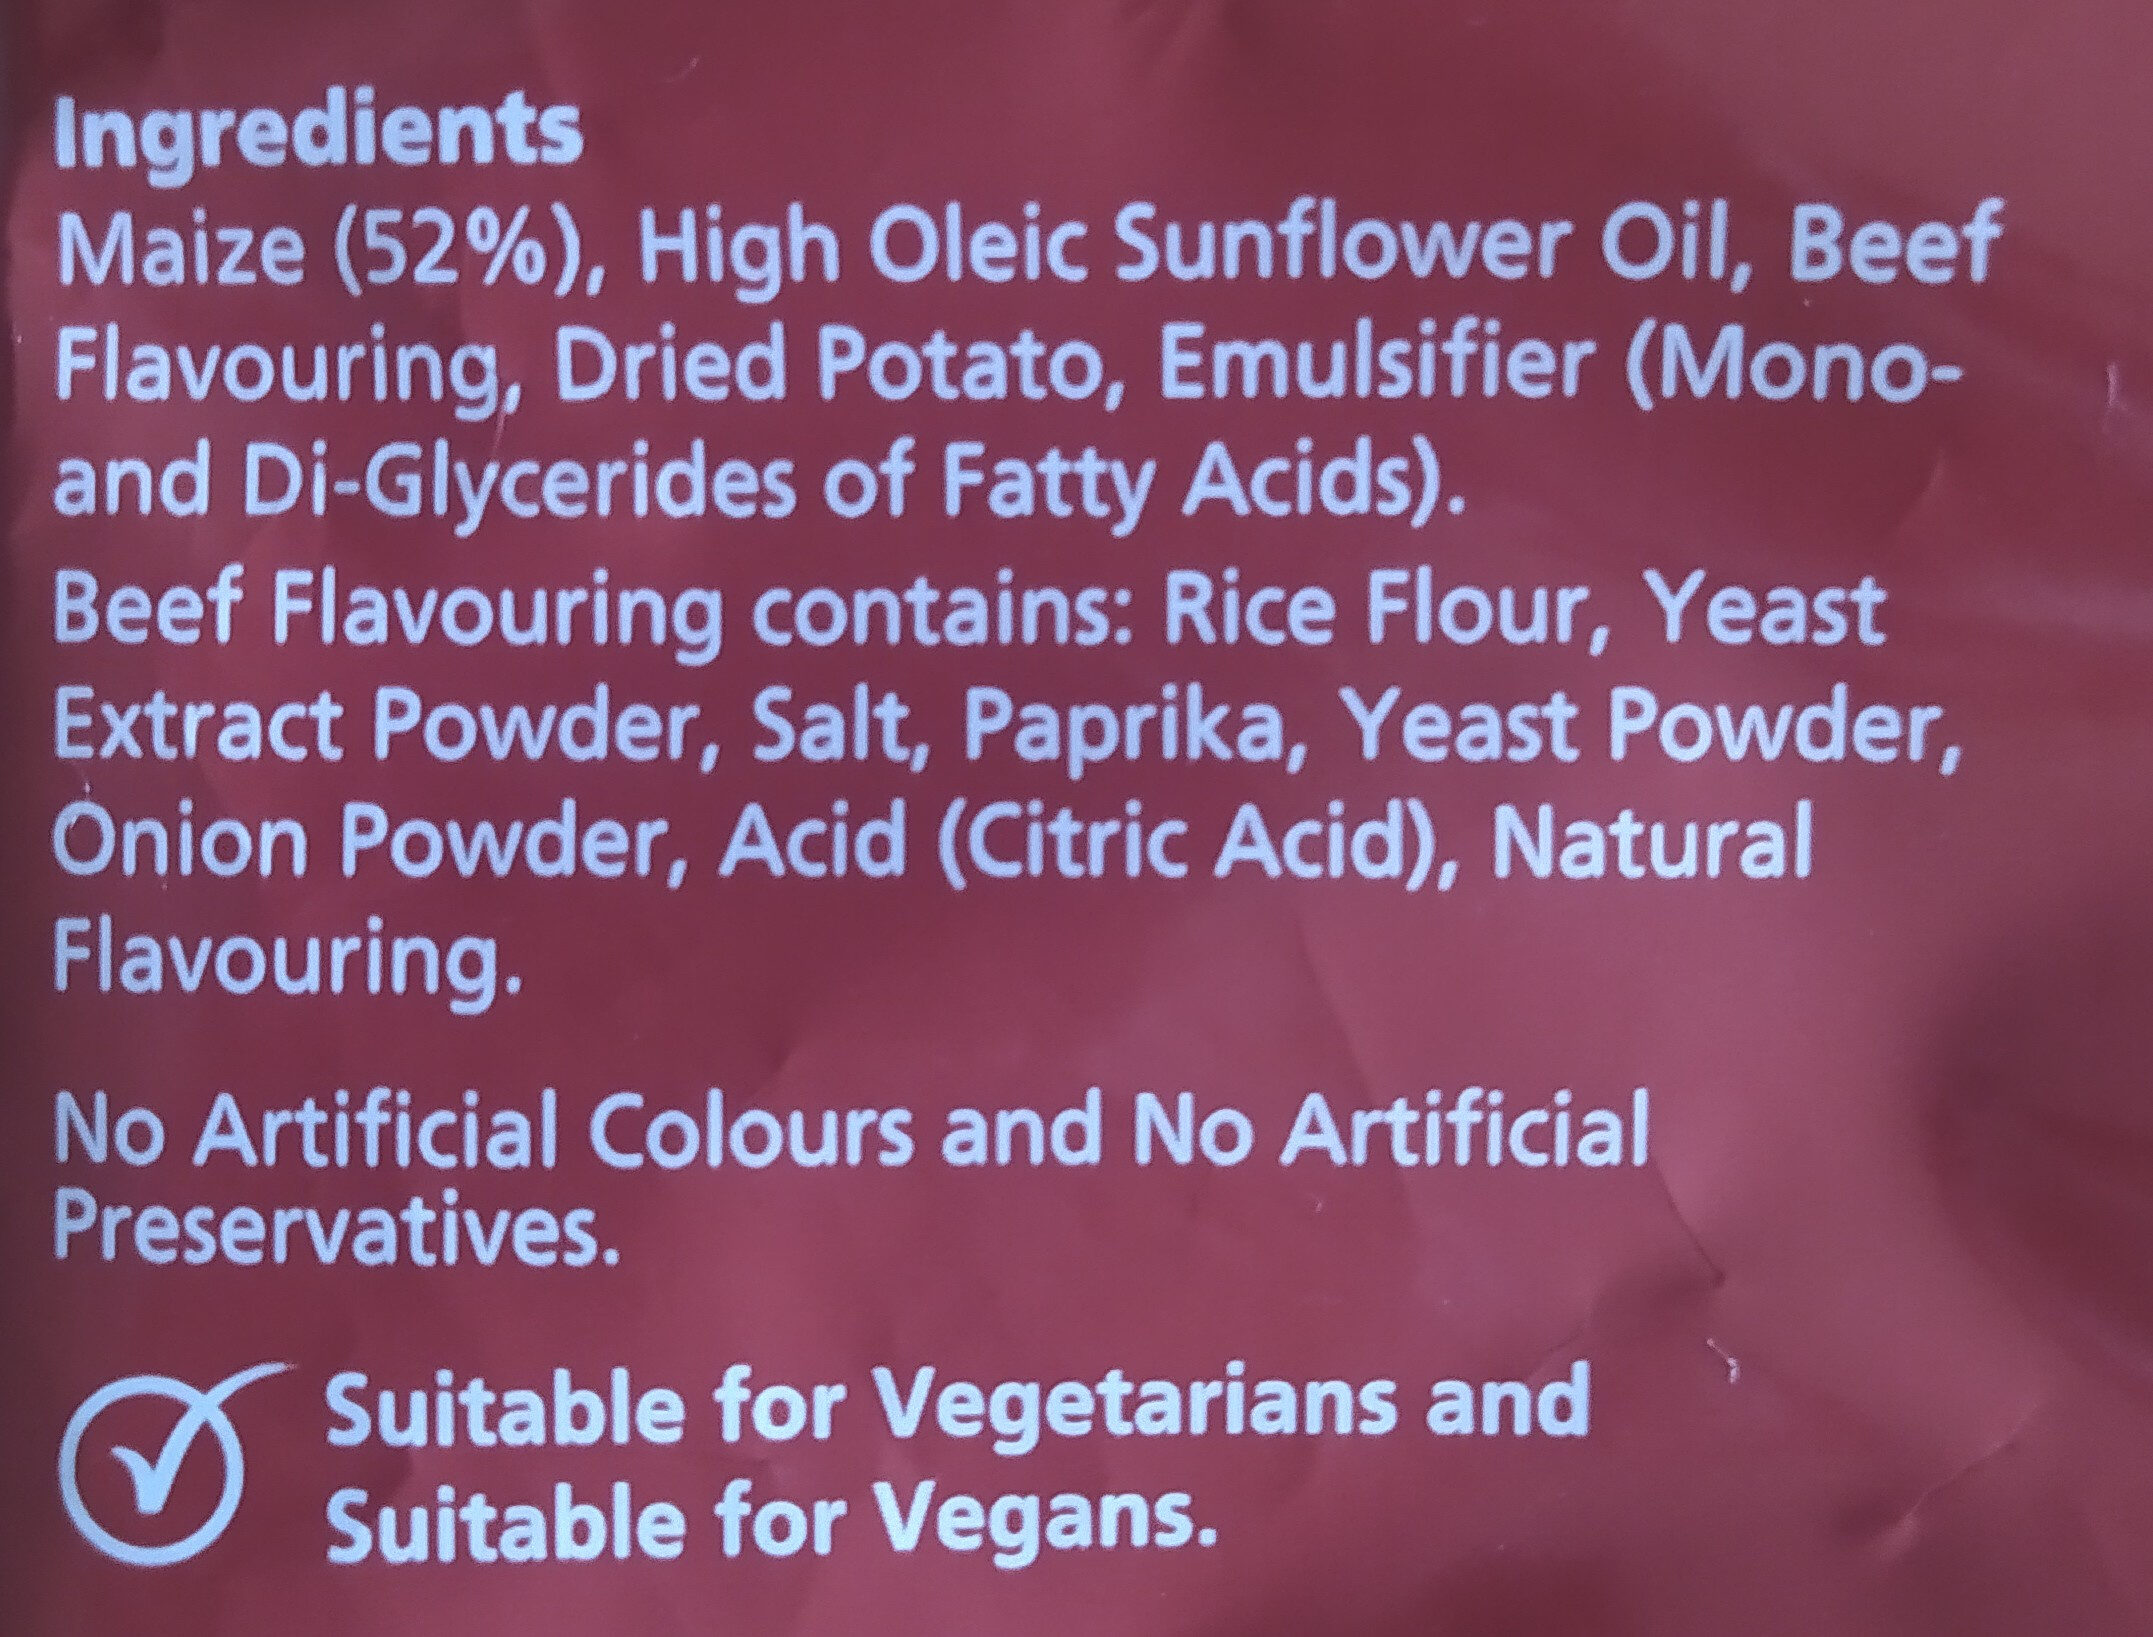 Burger Bites - Ingredients